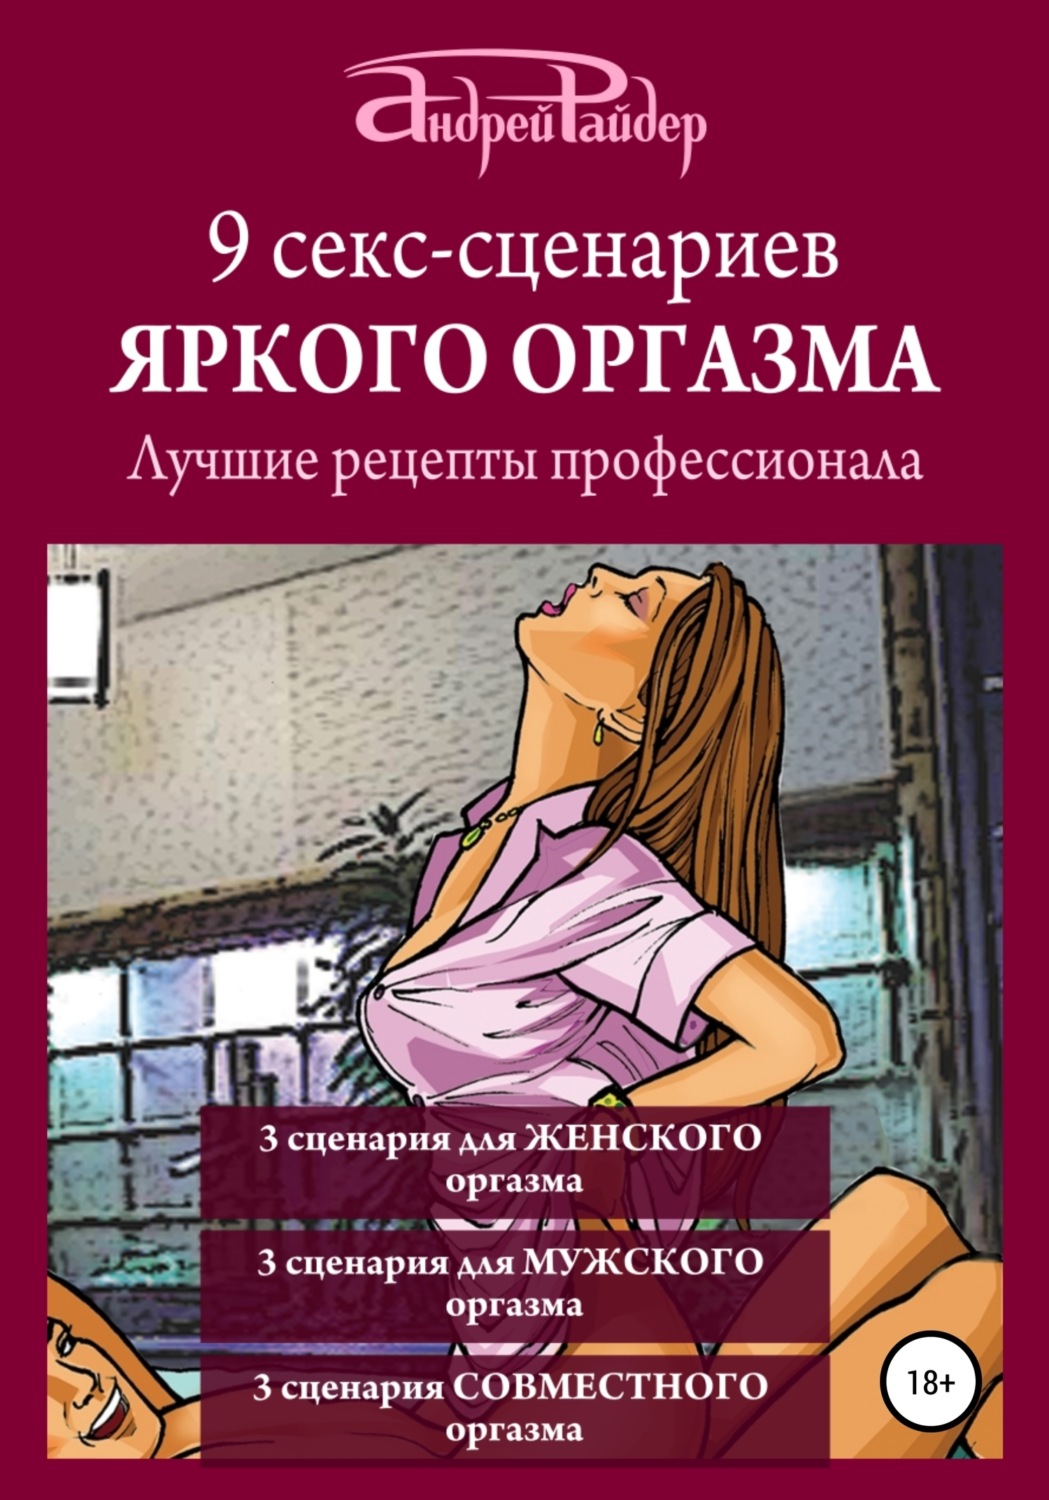 Порно Анастасии Мельниковой